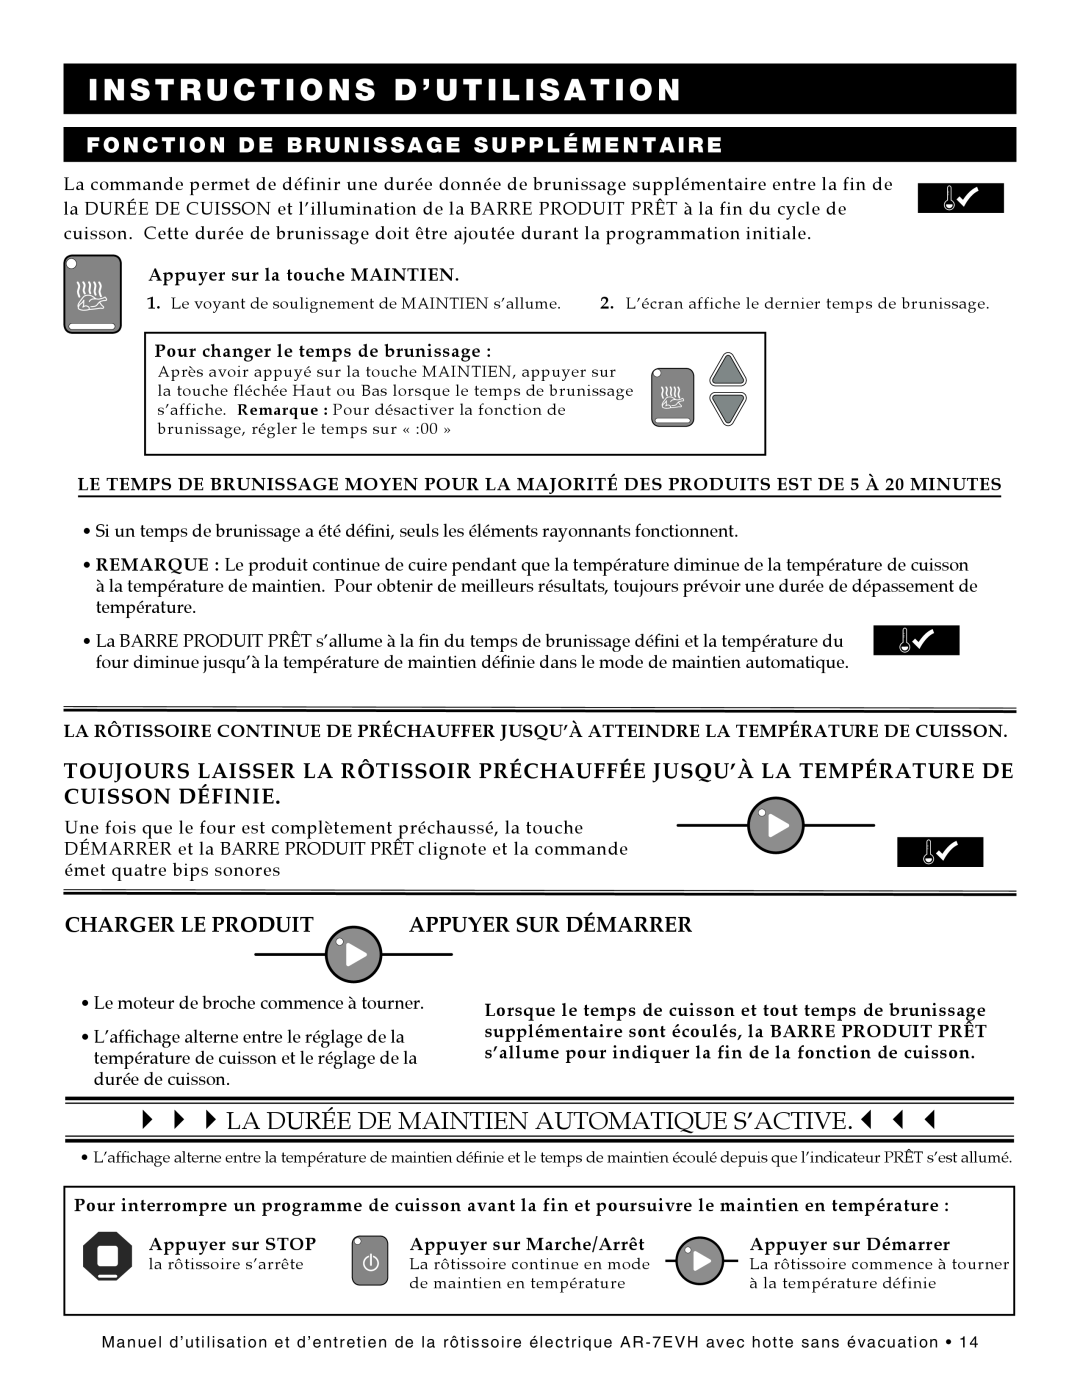 Alto-Shaam ar-7evh manual La Durée De Maintien Automatique S’Active., Fonction De Brunissage Supplémentaire 